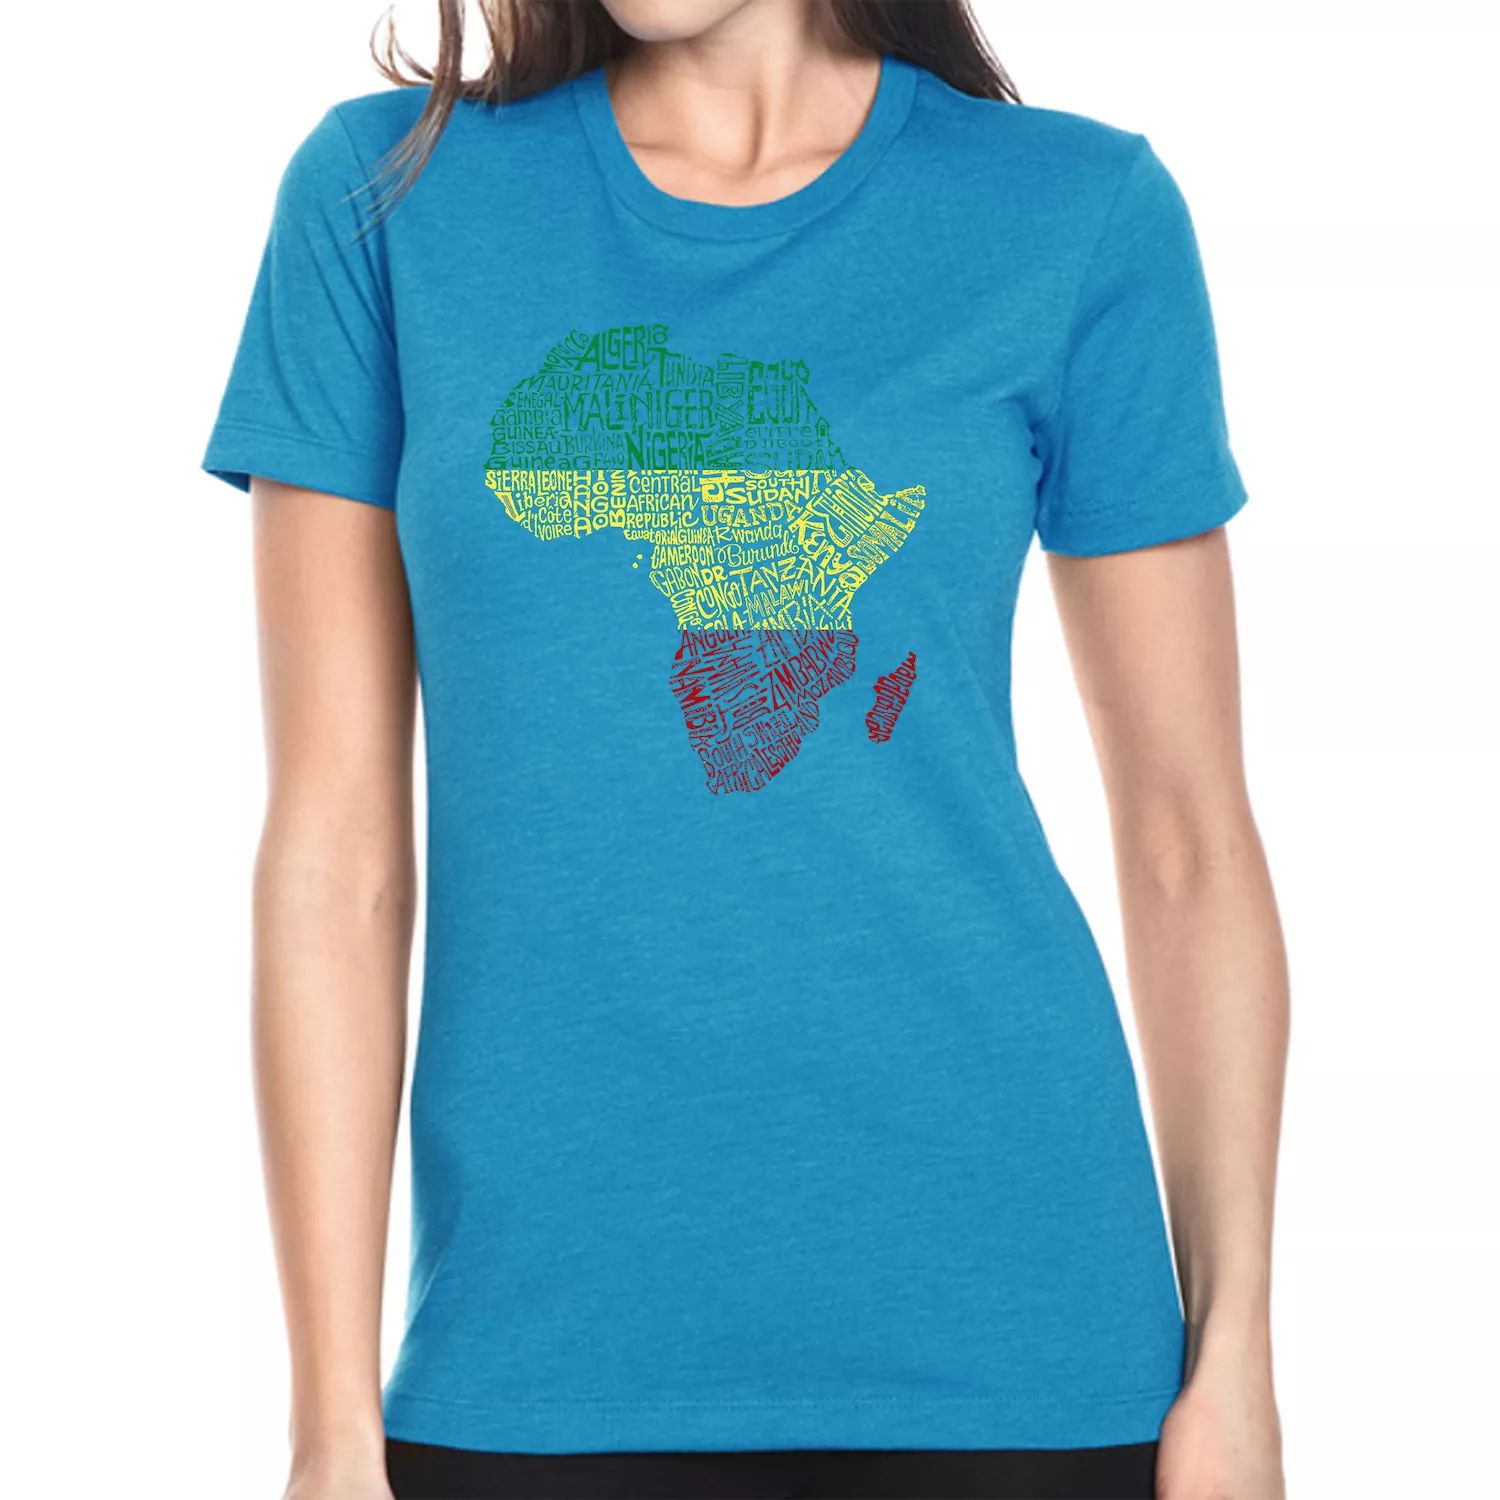 Страны Африки — женская футболка премиум-класса Word Art Blend LA Pop Art, голубой страны африки женская рубашка летучая мышь word art la pop art темно синий